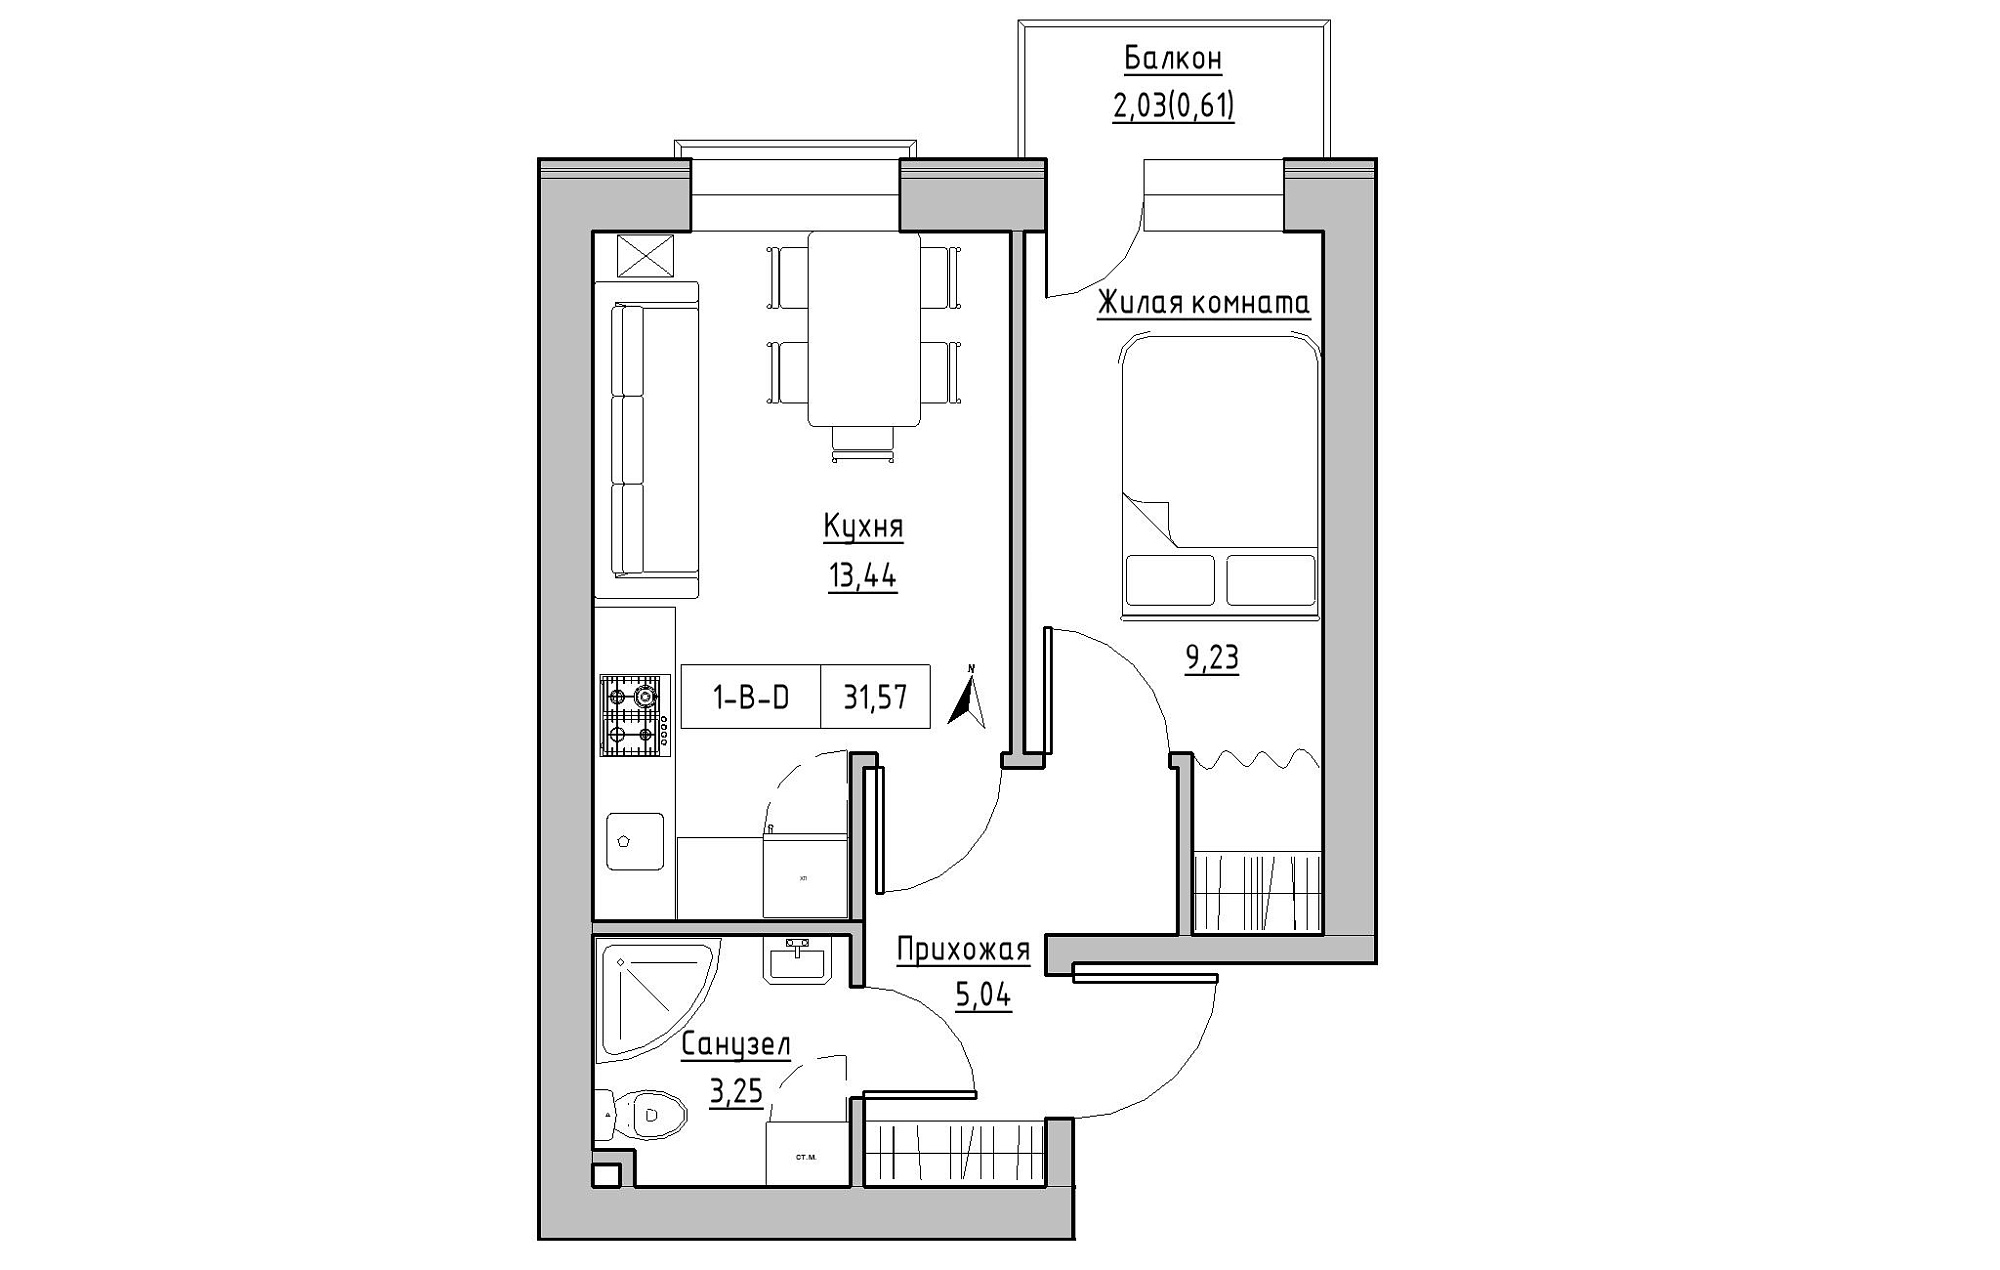 Планування 1-к квартира площею 31.57м2, KS-019-04/0013.